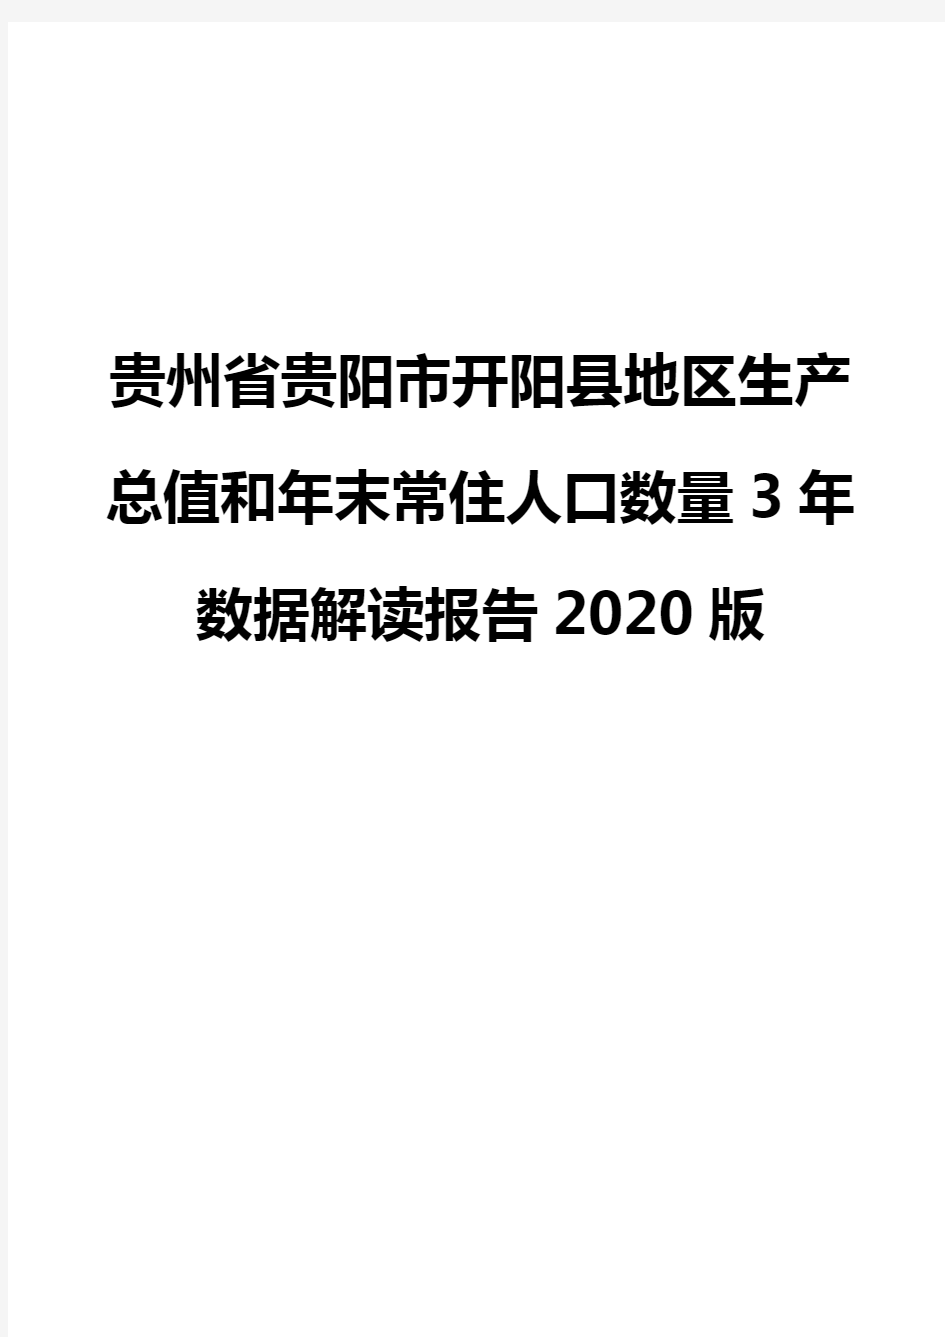 贵州省贵阳市开阳县地区生产总值和年末常住人口数量3年数据解读报告2020版